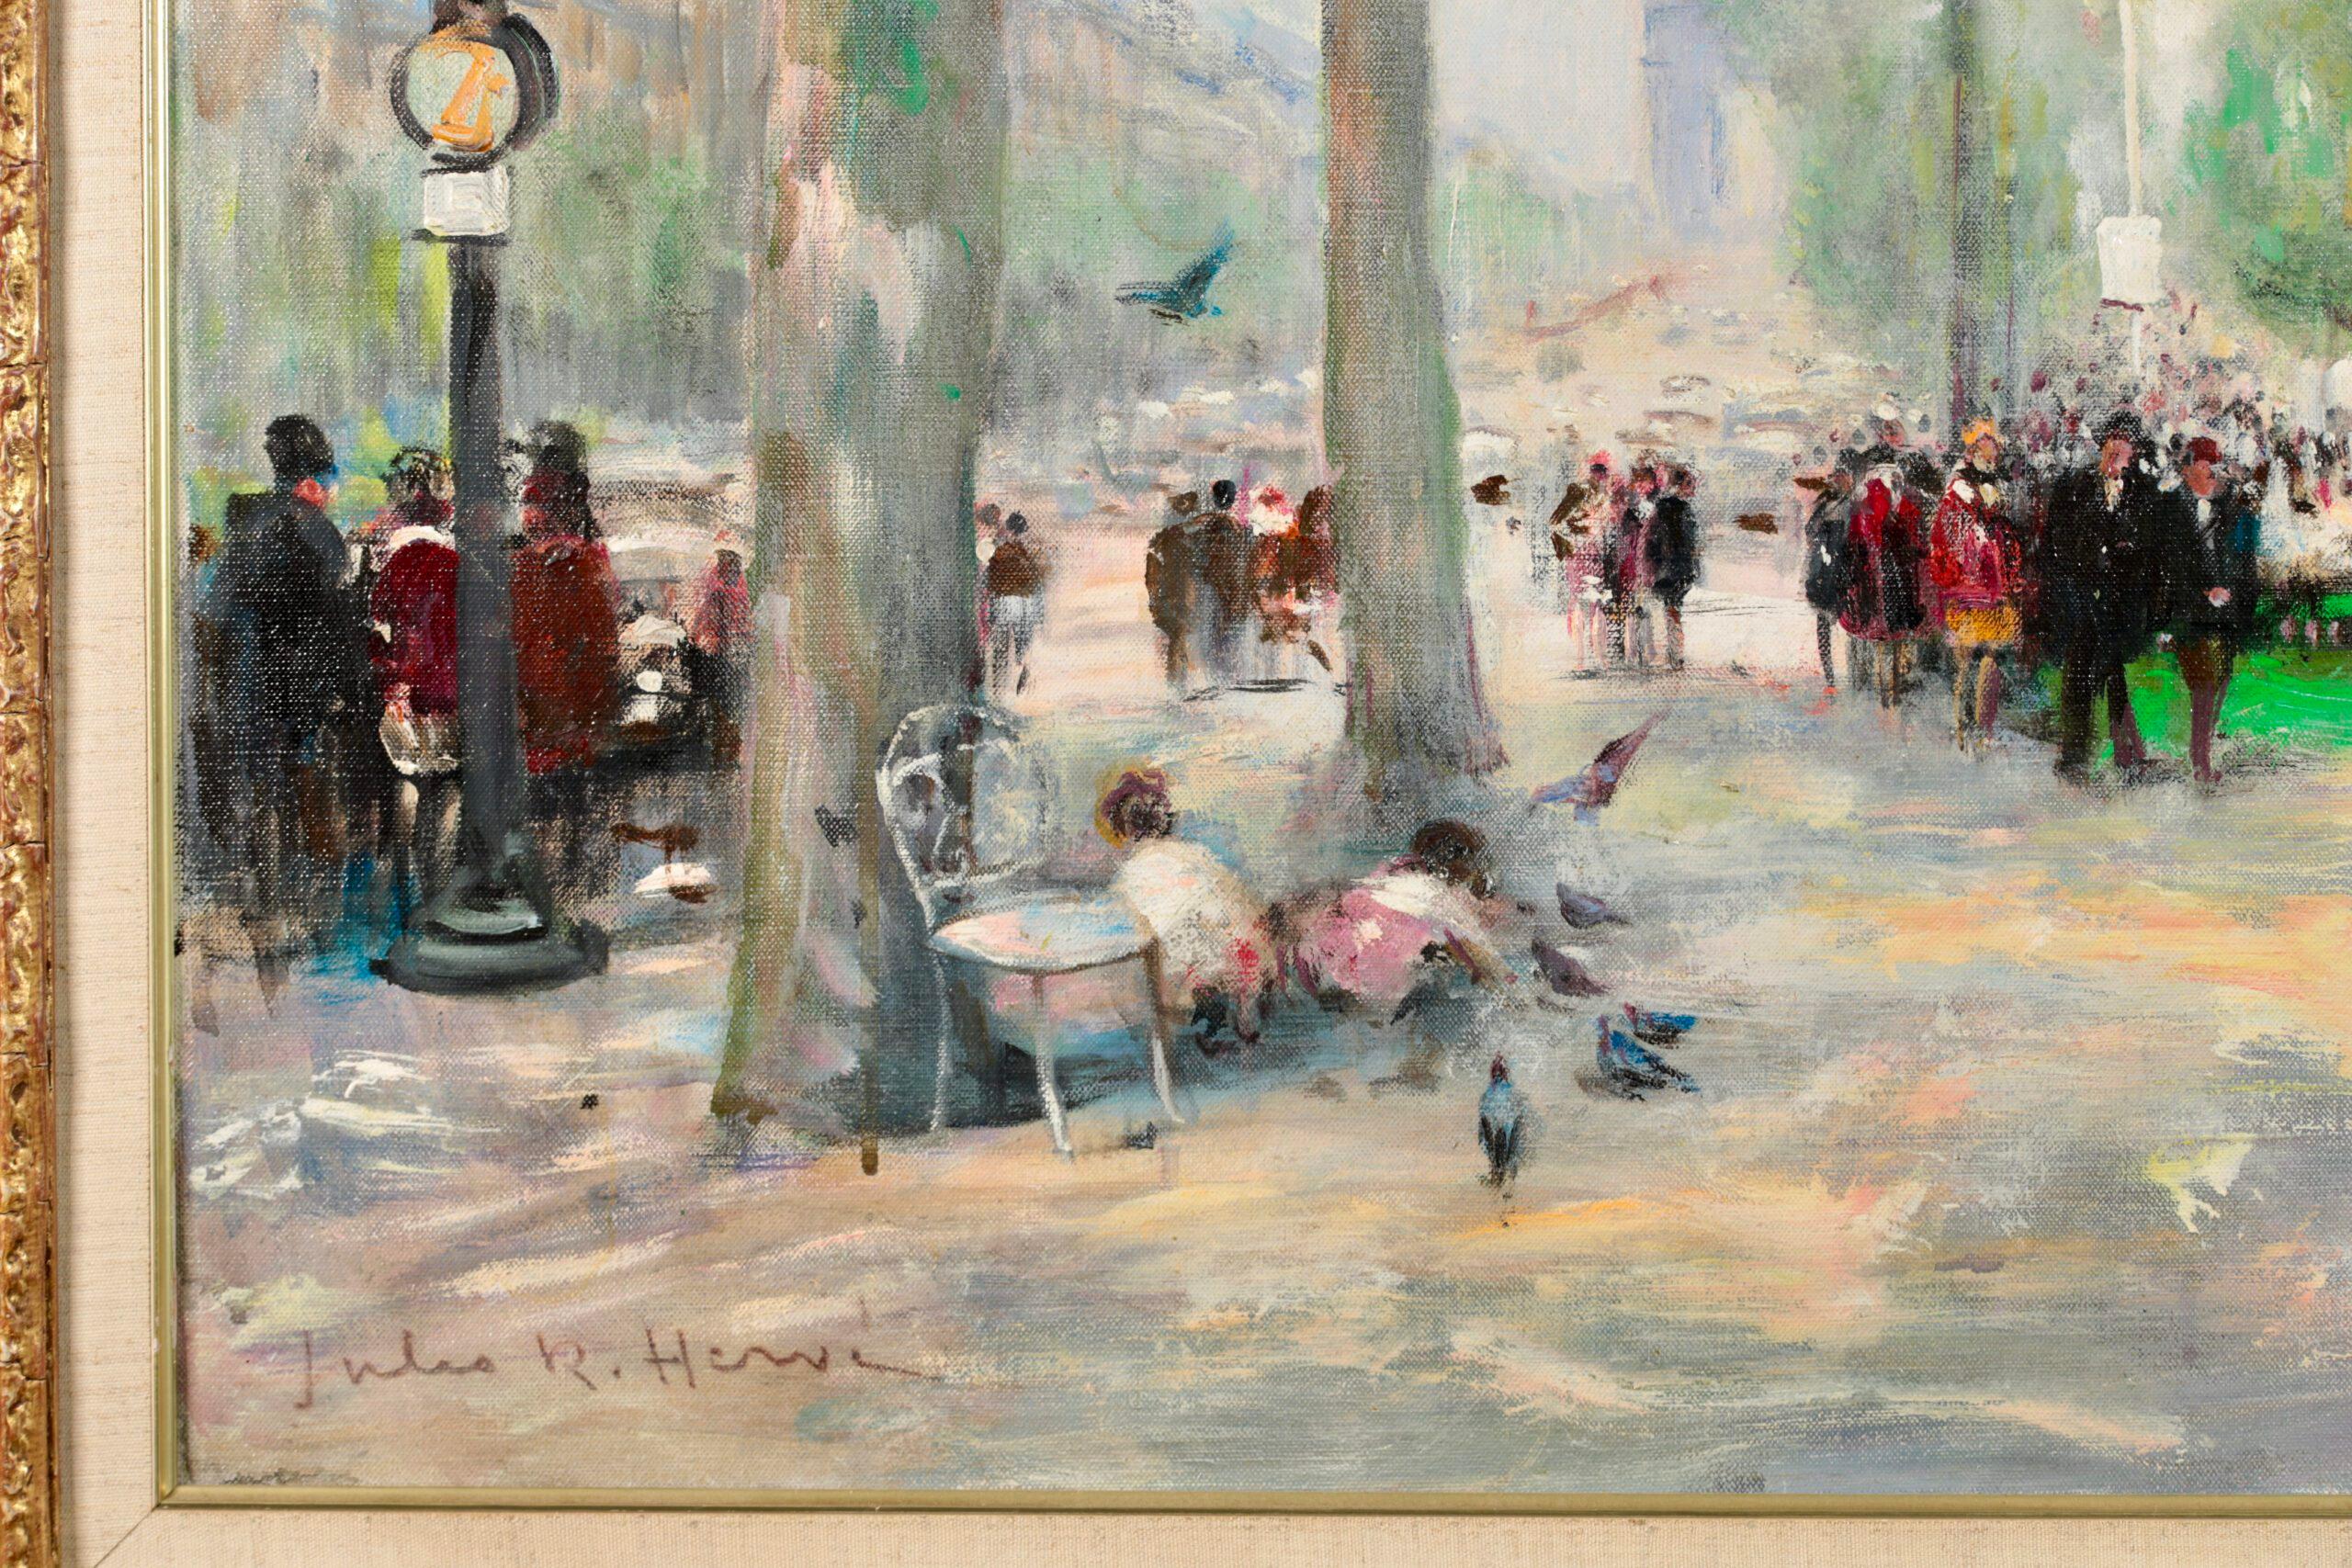 Huile sur toile signée, figures et animaux dans un paysage urbain, circa 1940, du peintre impressionniste français Jules René Hervé. Cette grande pièce représente une vue de Paris par une belle journée d'été. Les enfants font des promenades à dos